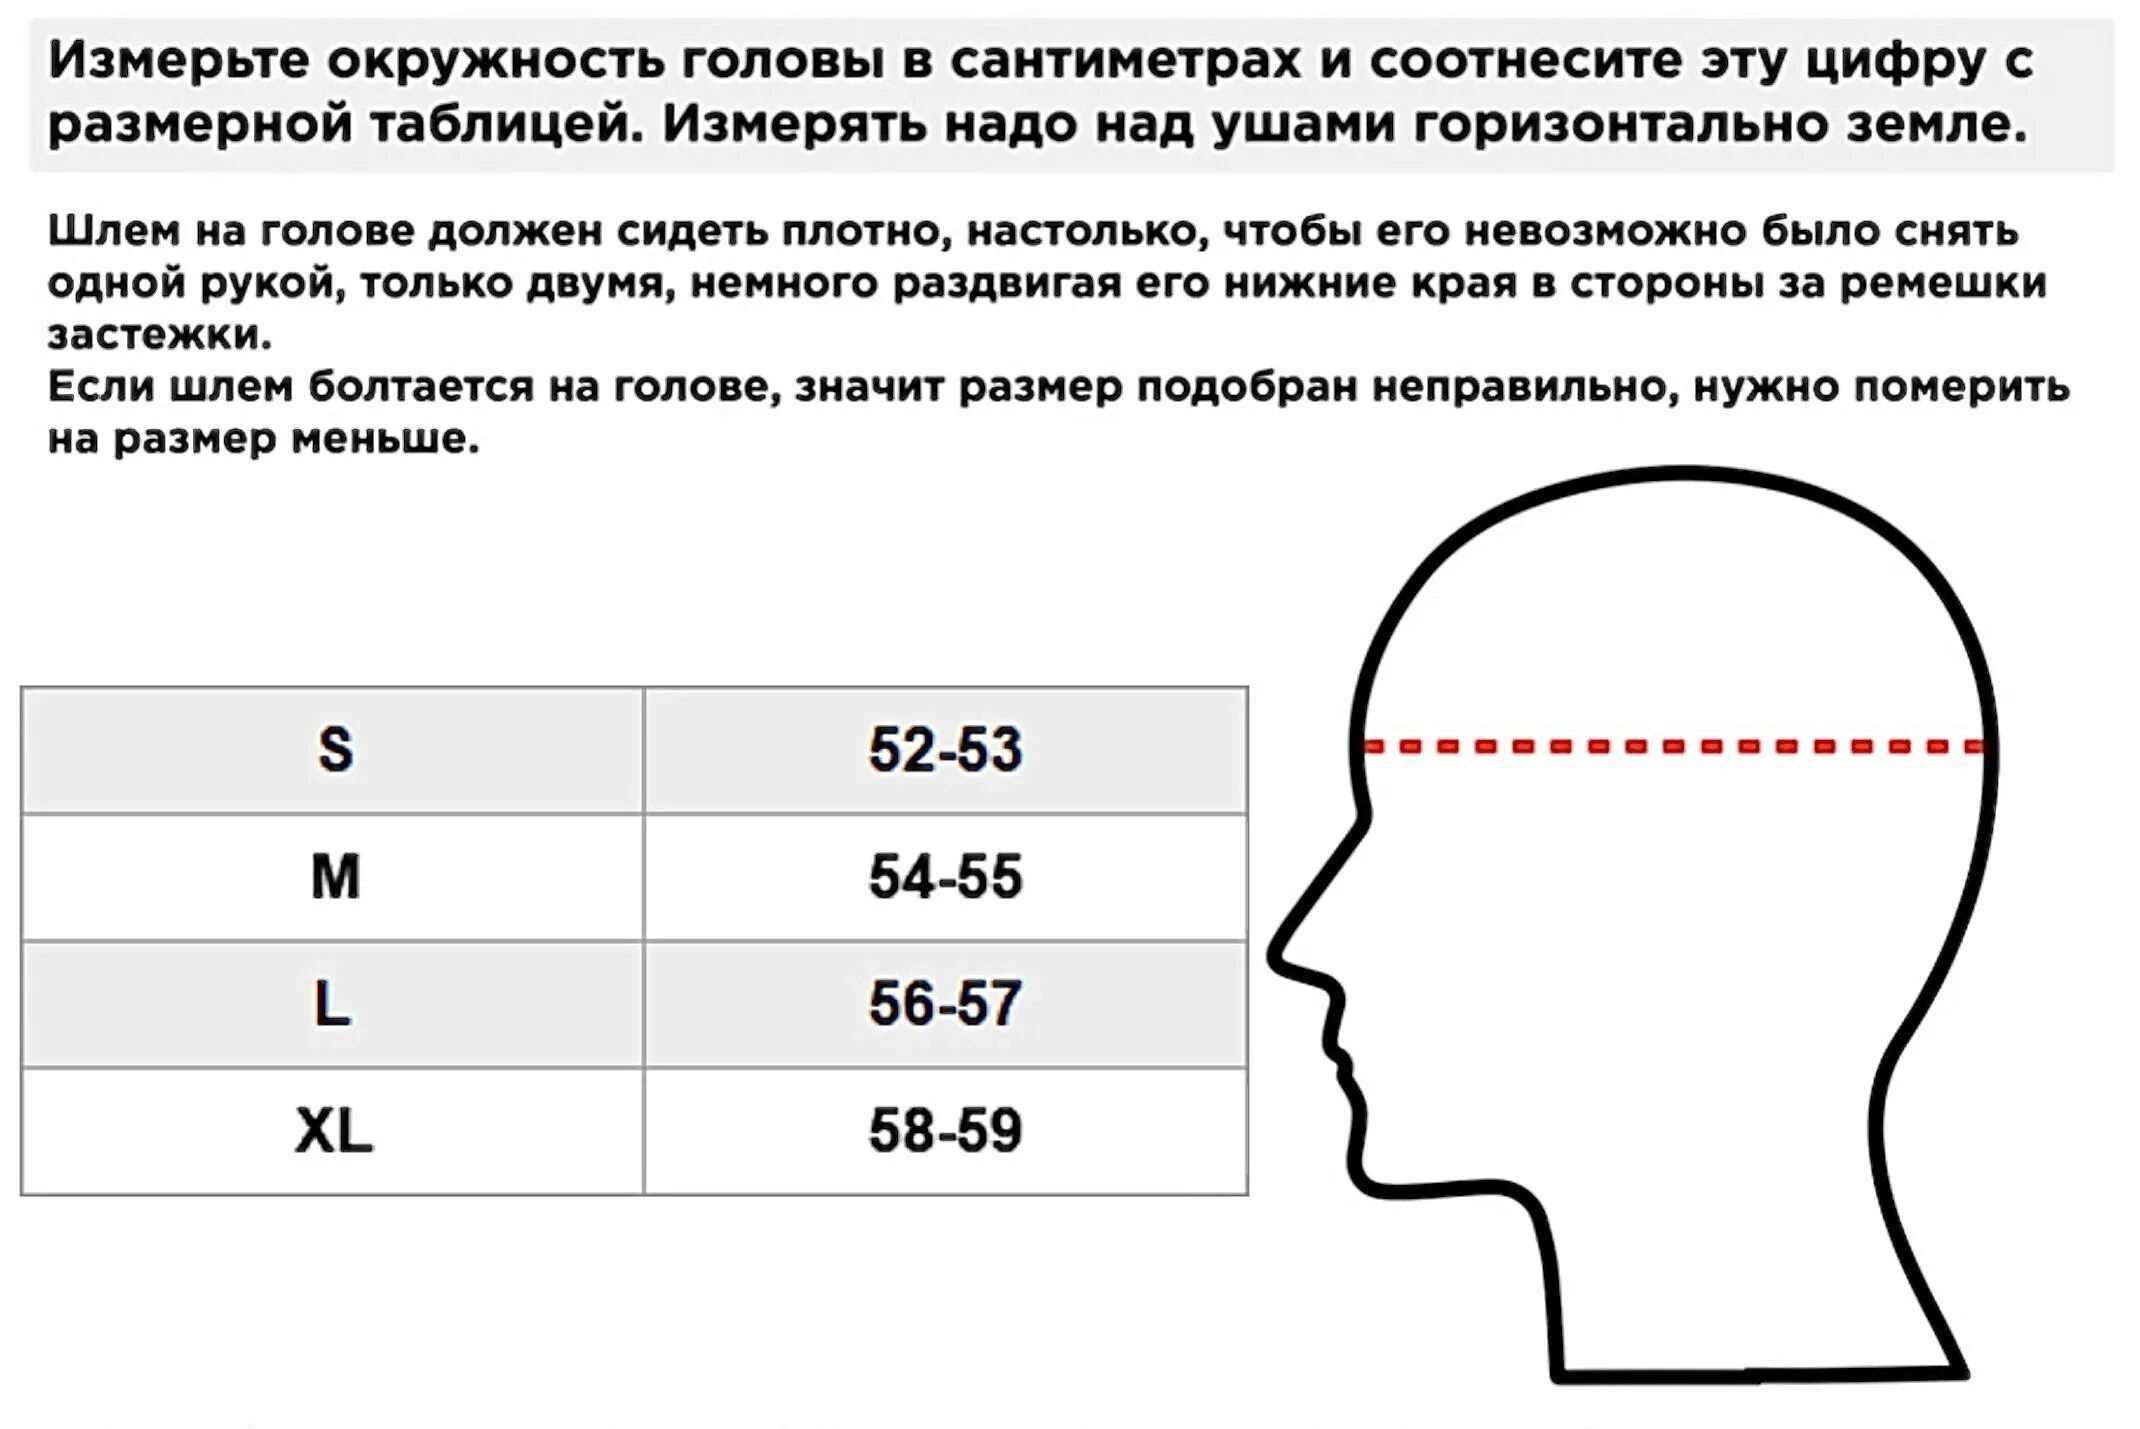 Окружность головы в 4. Размеры шлемов. Измерение головы для шлема. Таблица размеров мотошлемов. Размеры мотошлемов.